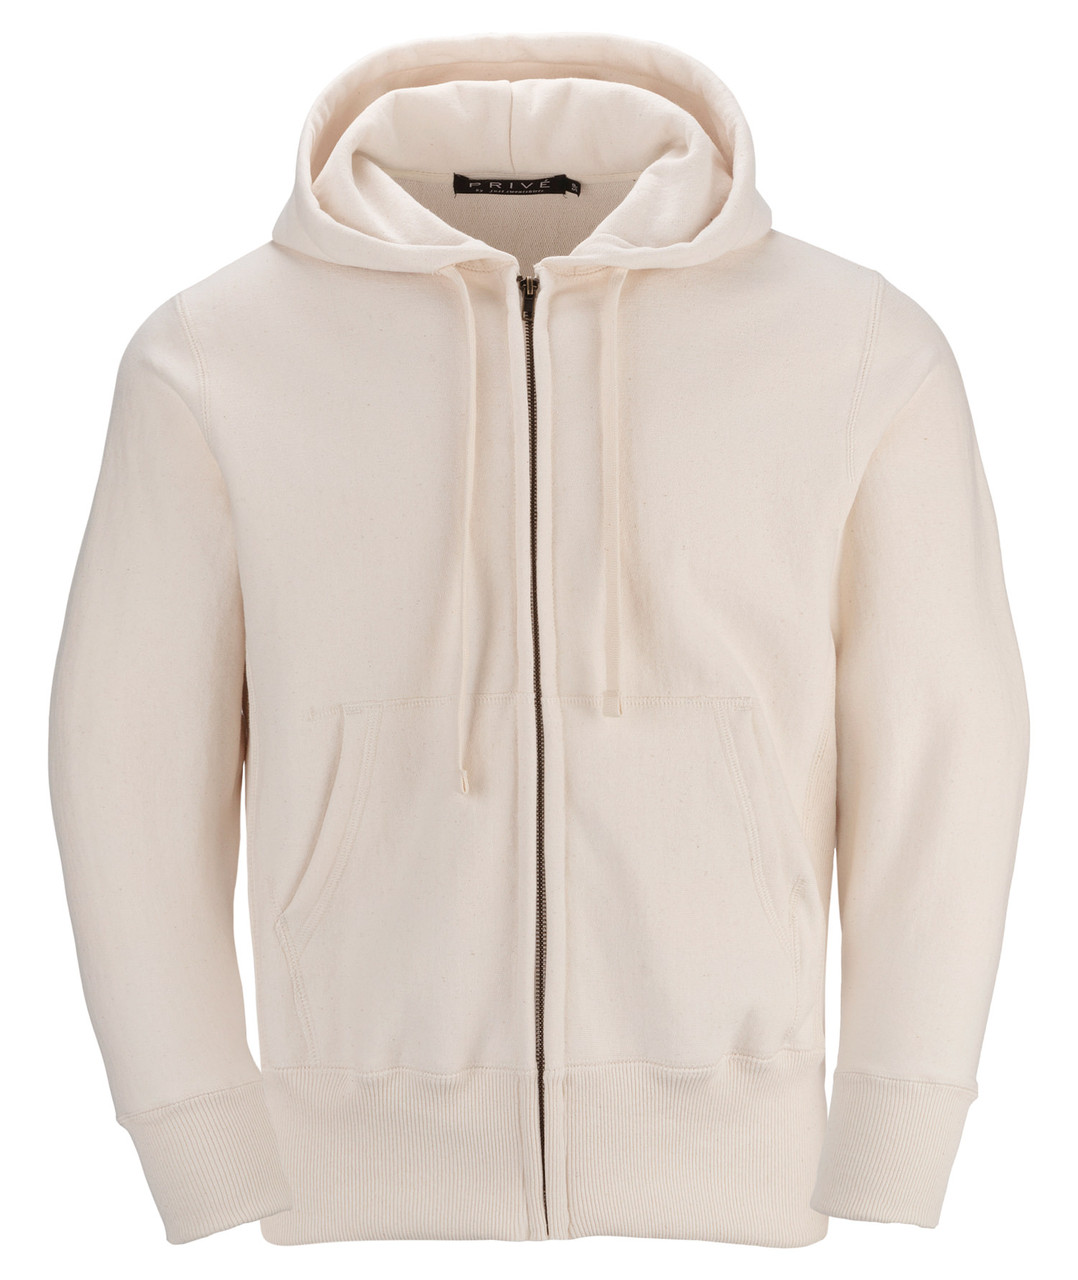 Soft & Cozy 100% Cotton Fleece Zip Hoodie with Inner Pockets | Black